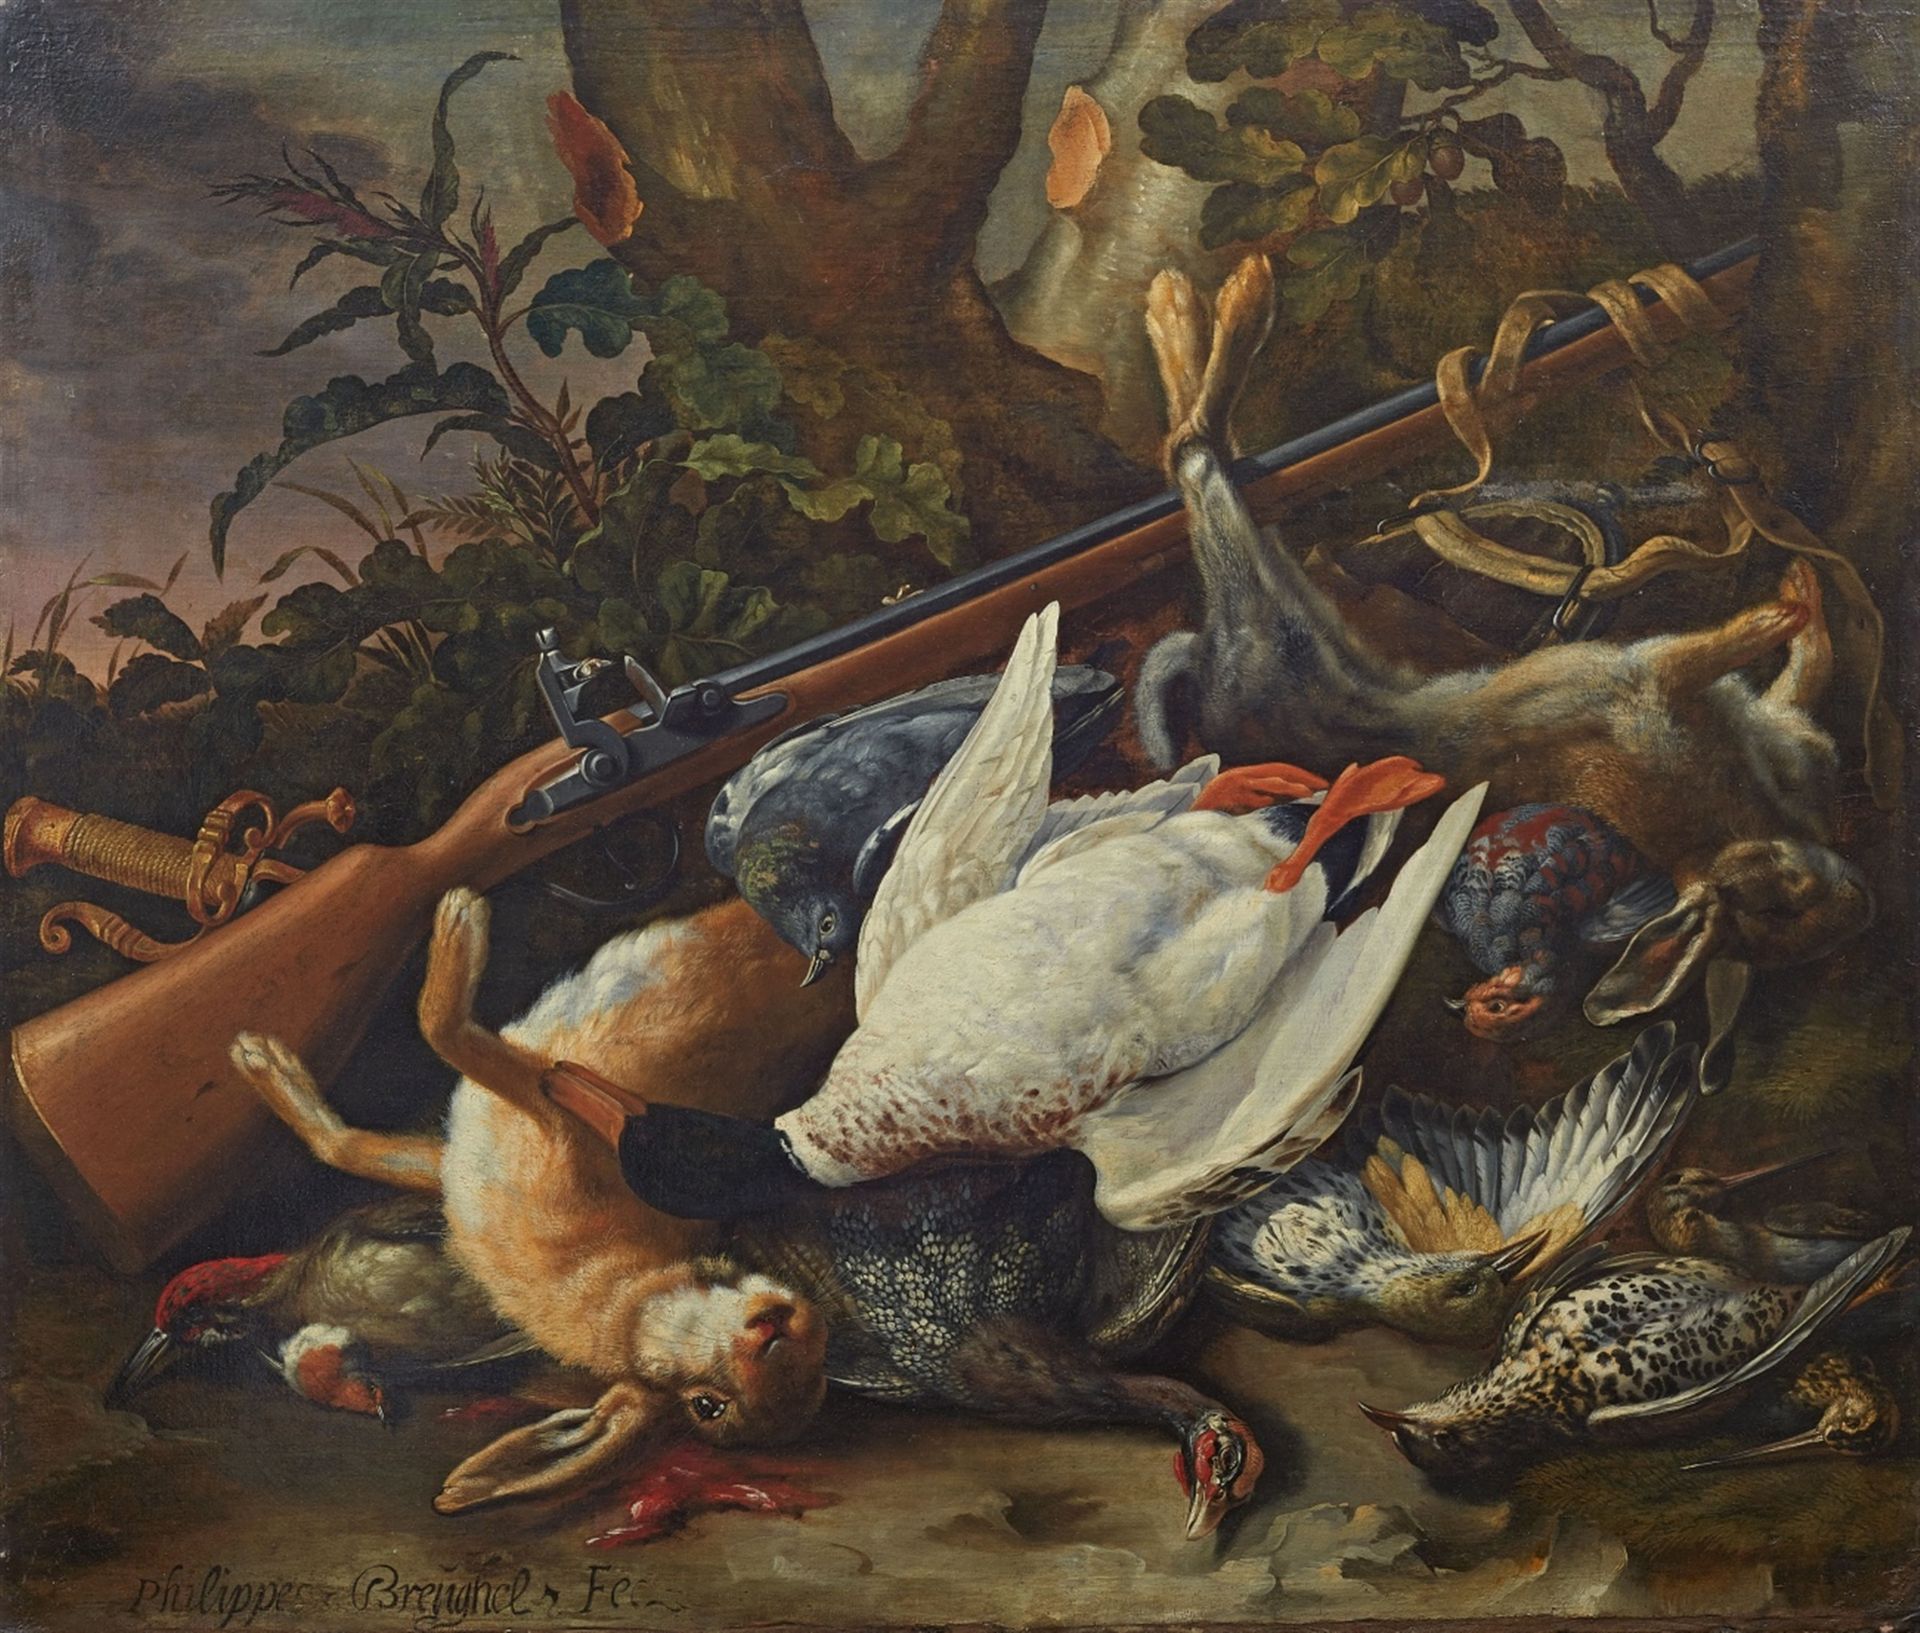 Philippe Brueghel, Hunting Still Life